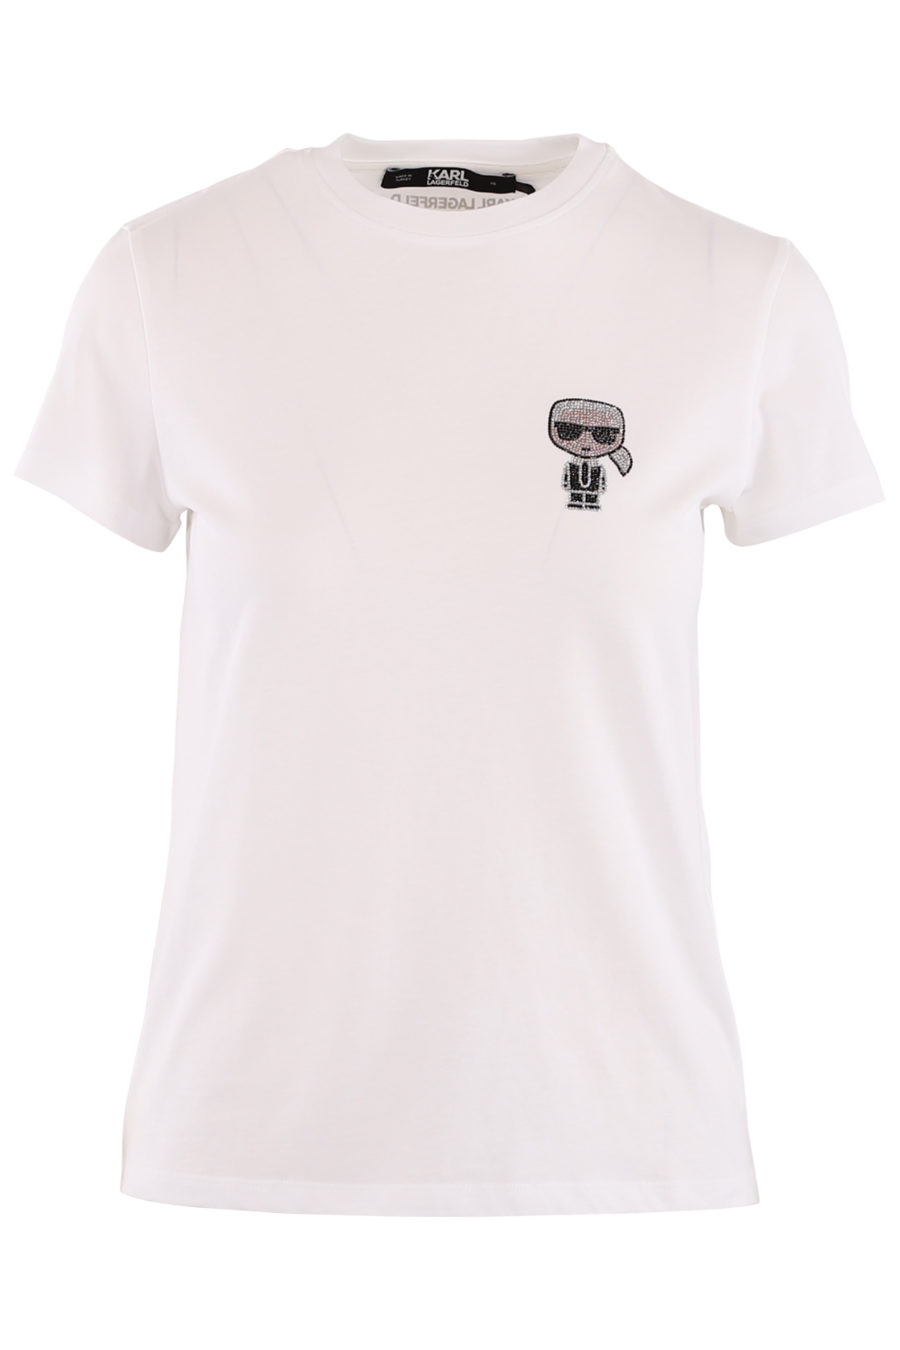 White T-shirt with shiny "Karl" - e177863d4d31940eb88fb68bf369d243f0151eef